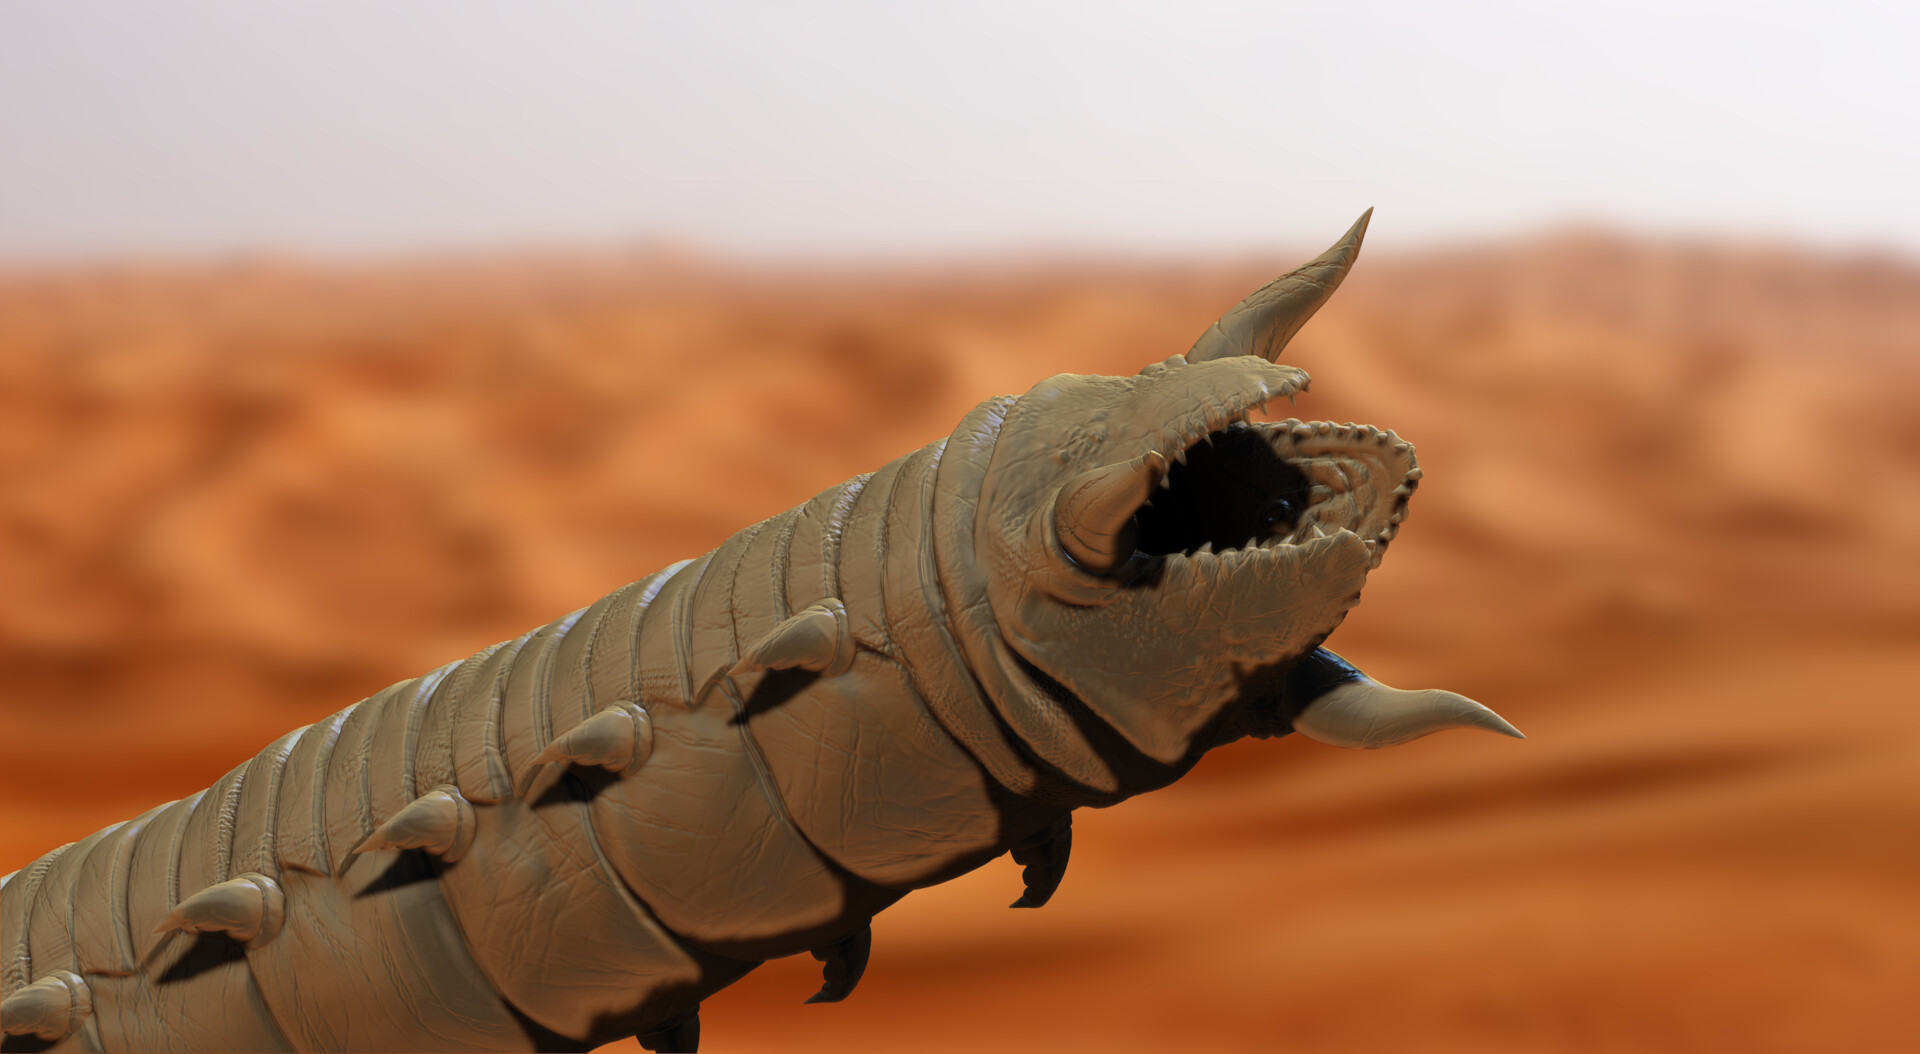 Dune Sandworm 2D/ 3D Concept.